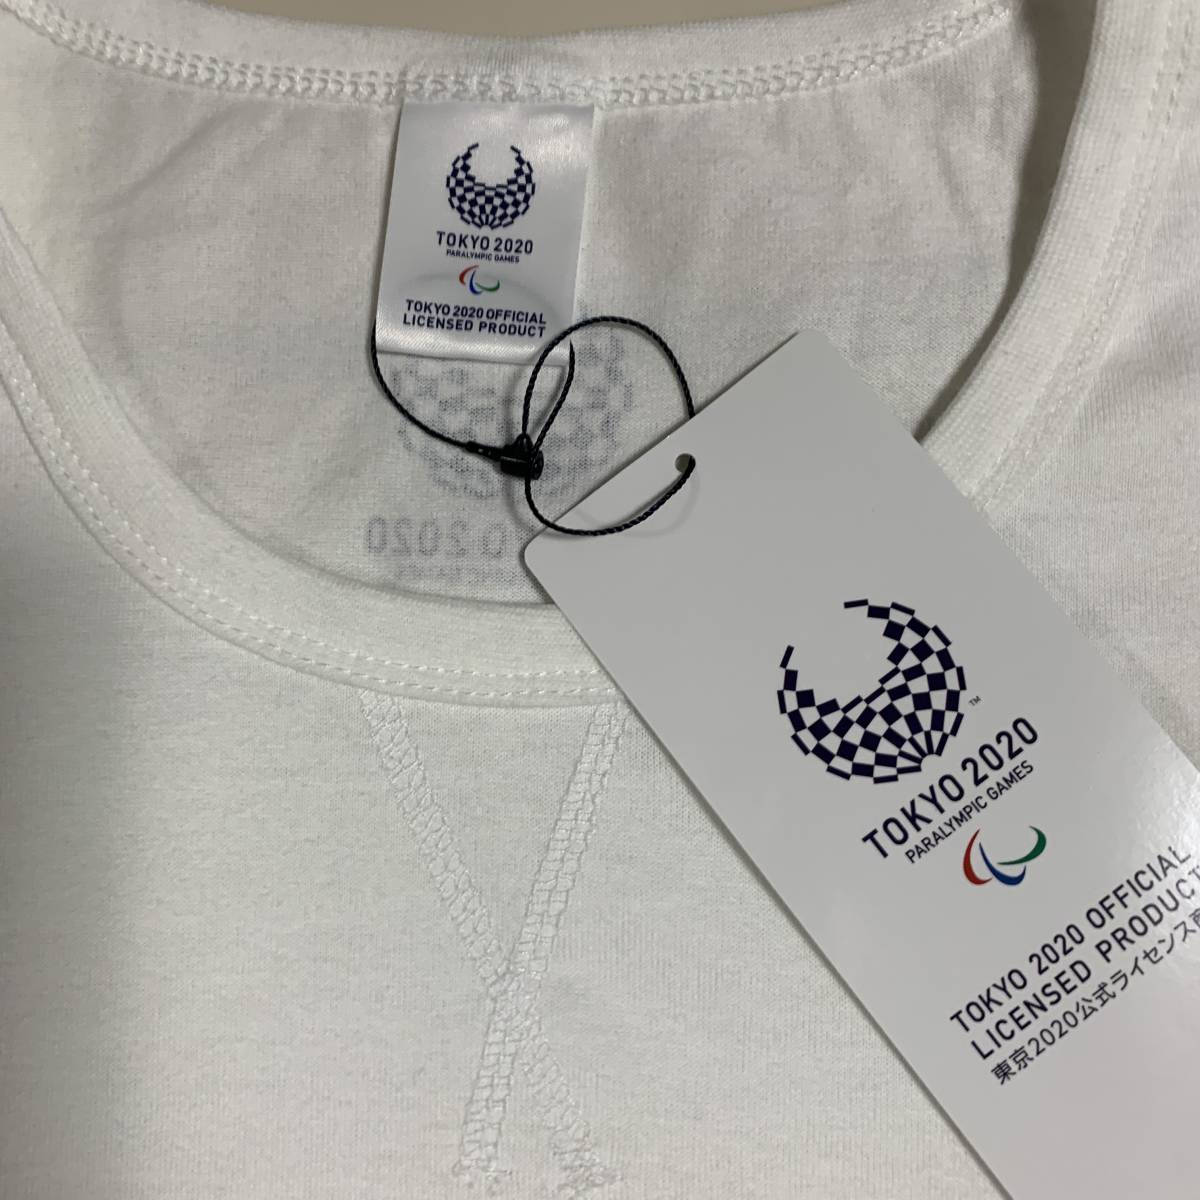 東京2020 東京オリンピック パラリンピック - TOKYP2020 公式ロゴTシャツ LLサイズ 公式ライセンス商品 販売終了 (タグ付き新品未着用)_画像8